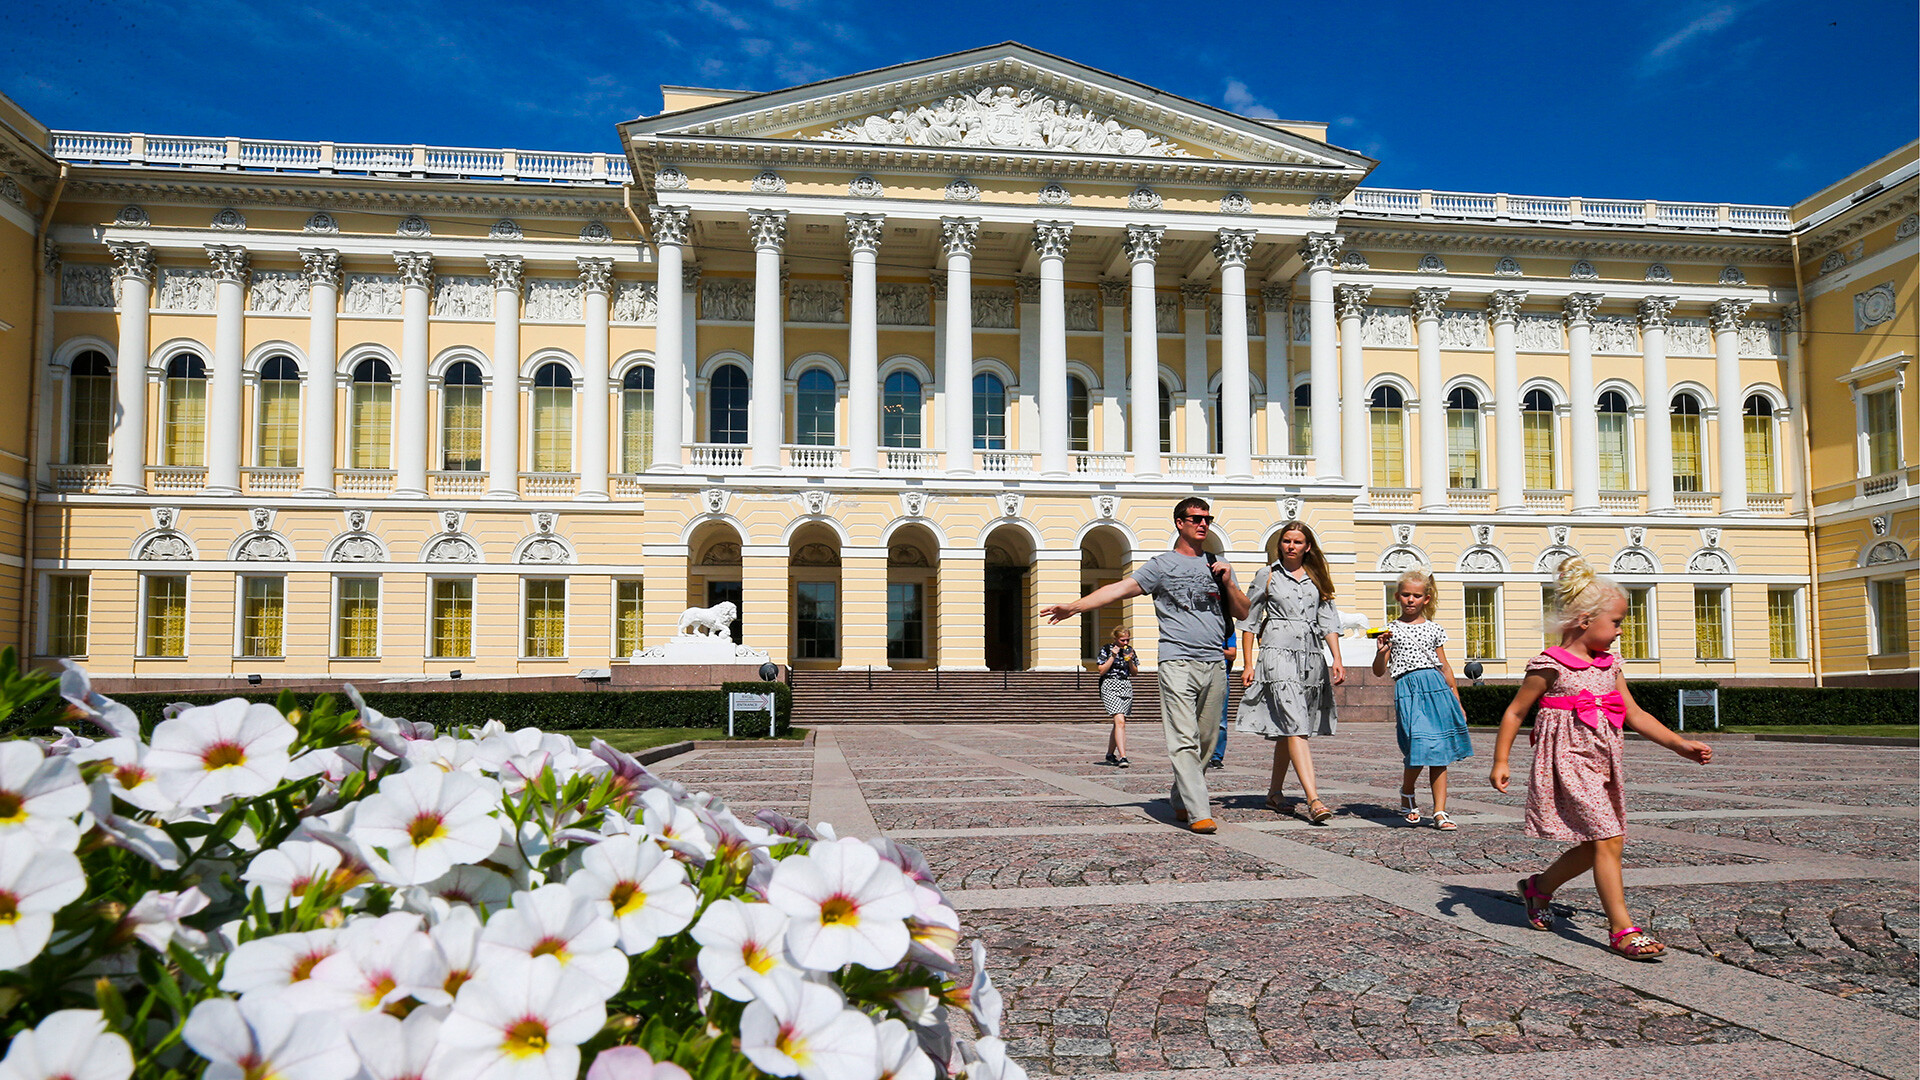 Vue sur le palais Mikhaïlovski (palais Michel), le bâtiment principal du Musée russe
